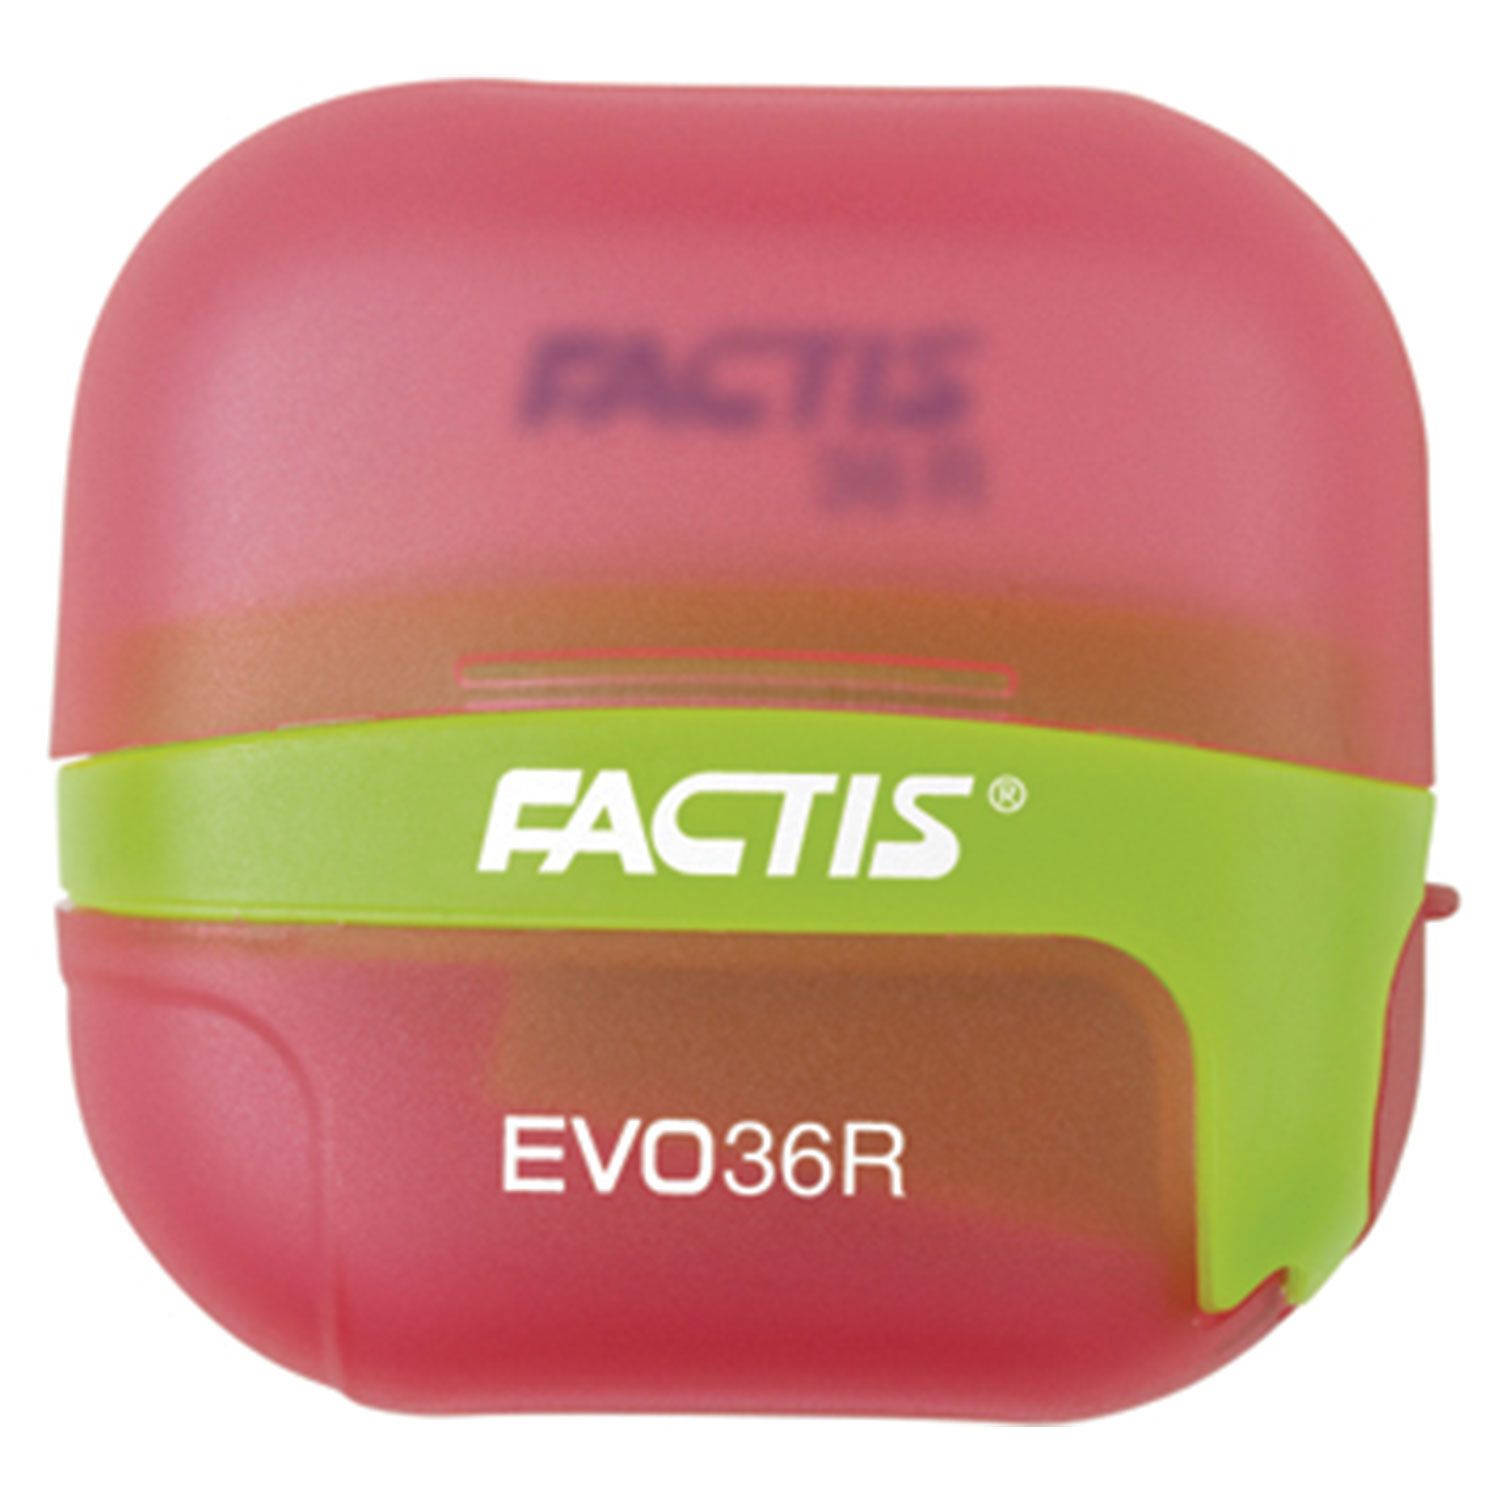 Точилка FACTIS EVO36R (Испания), с контейнером и стирательной резинкой, 50x50x25 мм, ассорти, F4707116